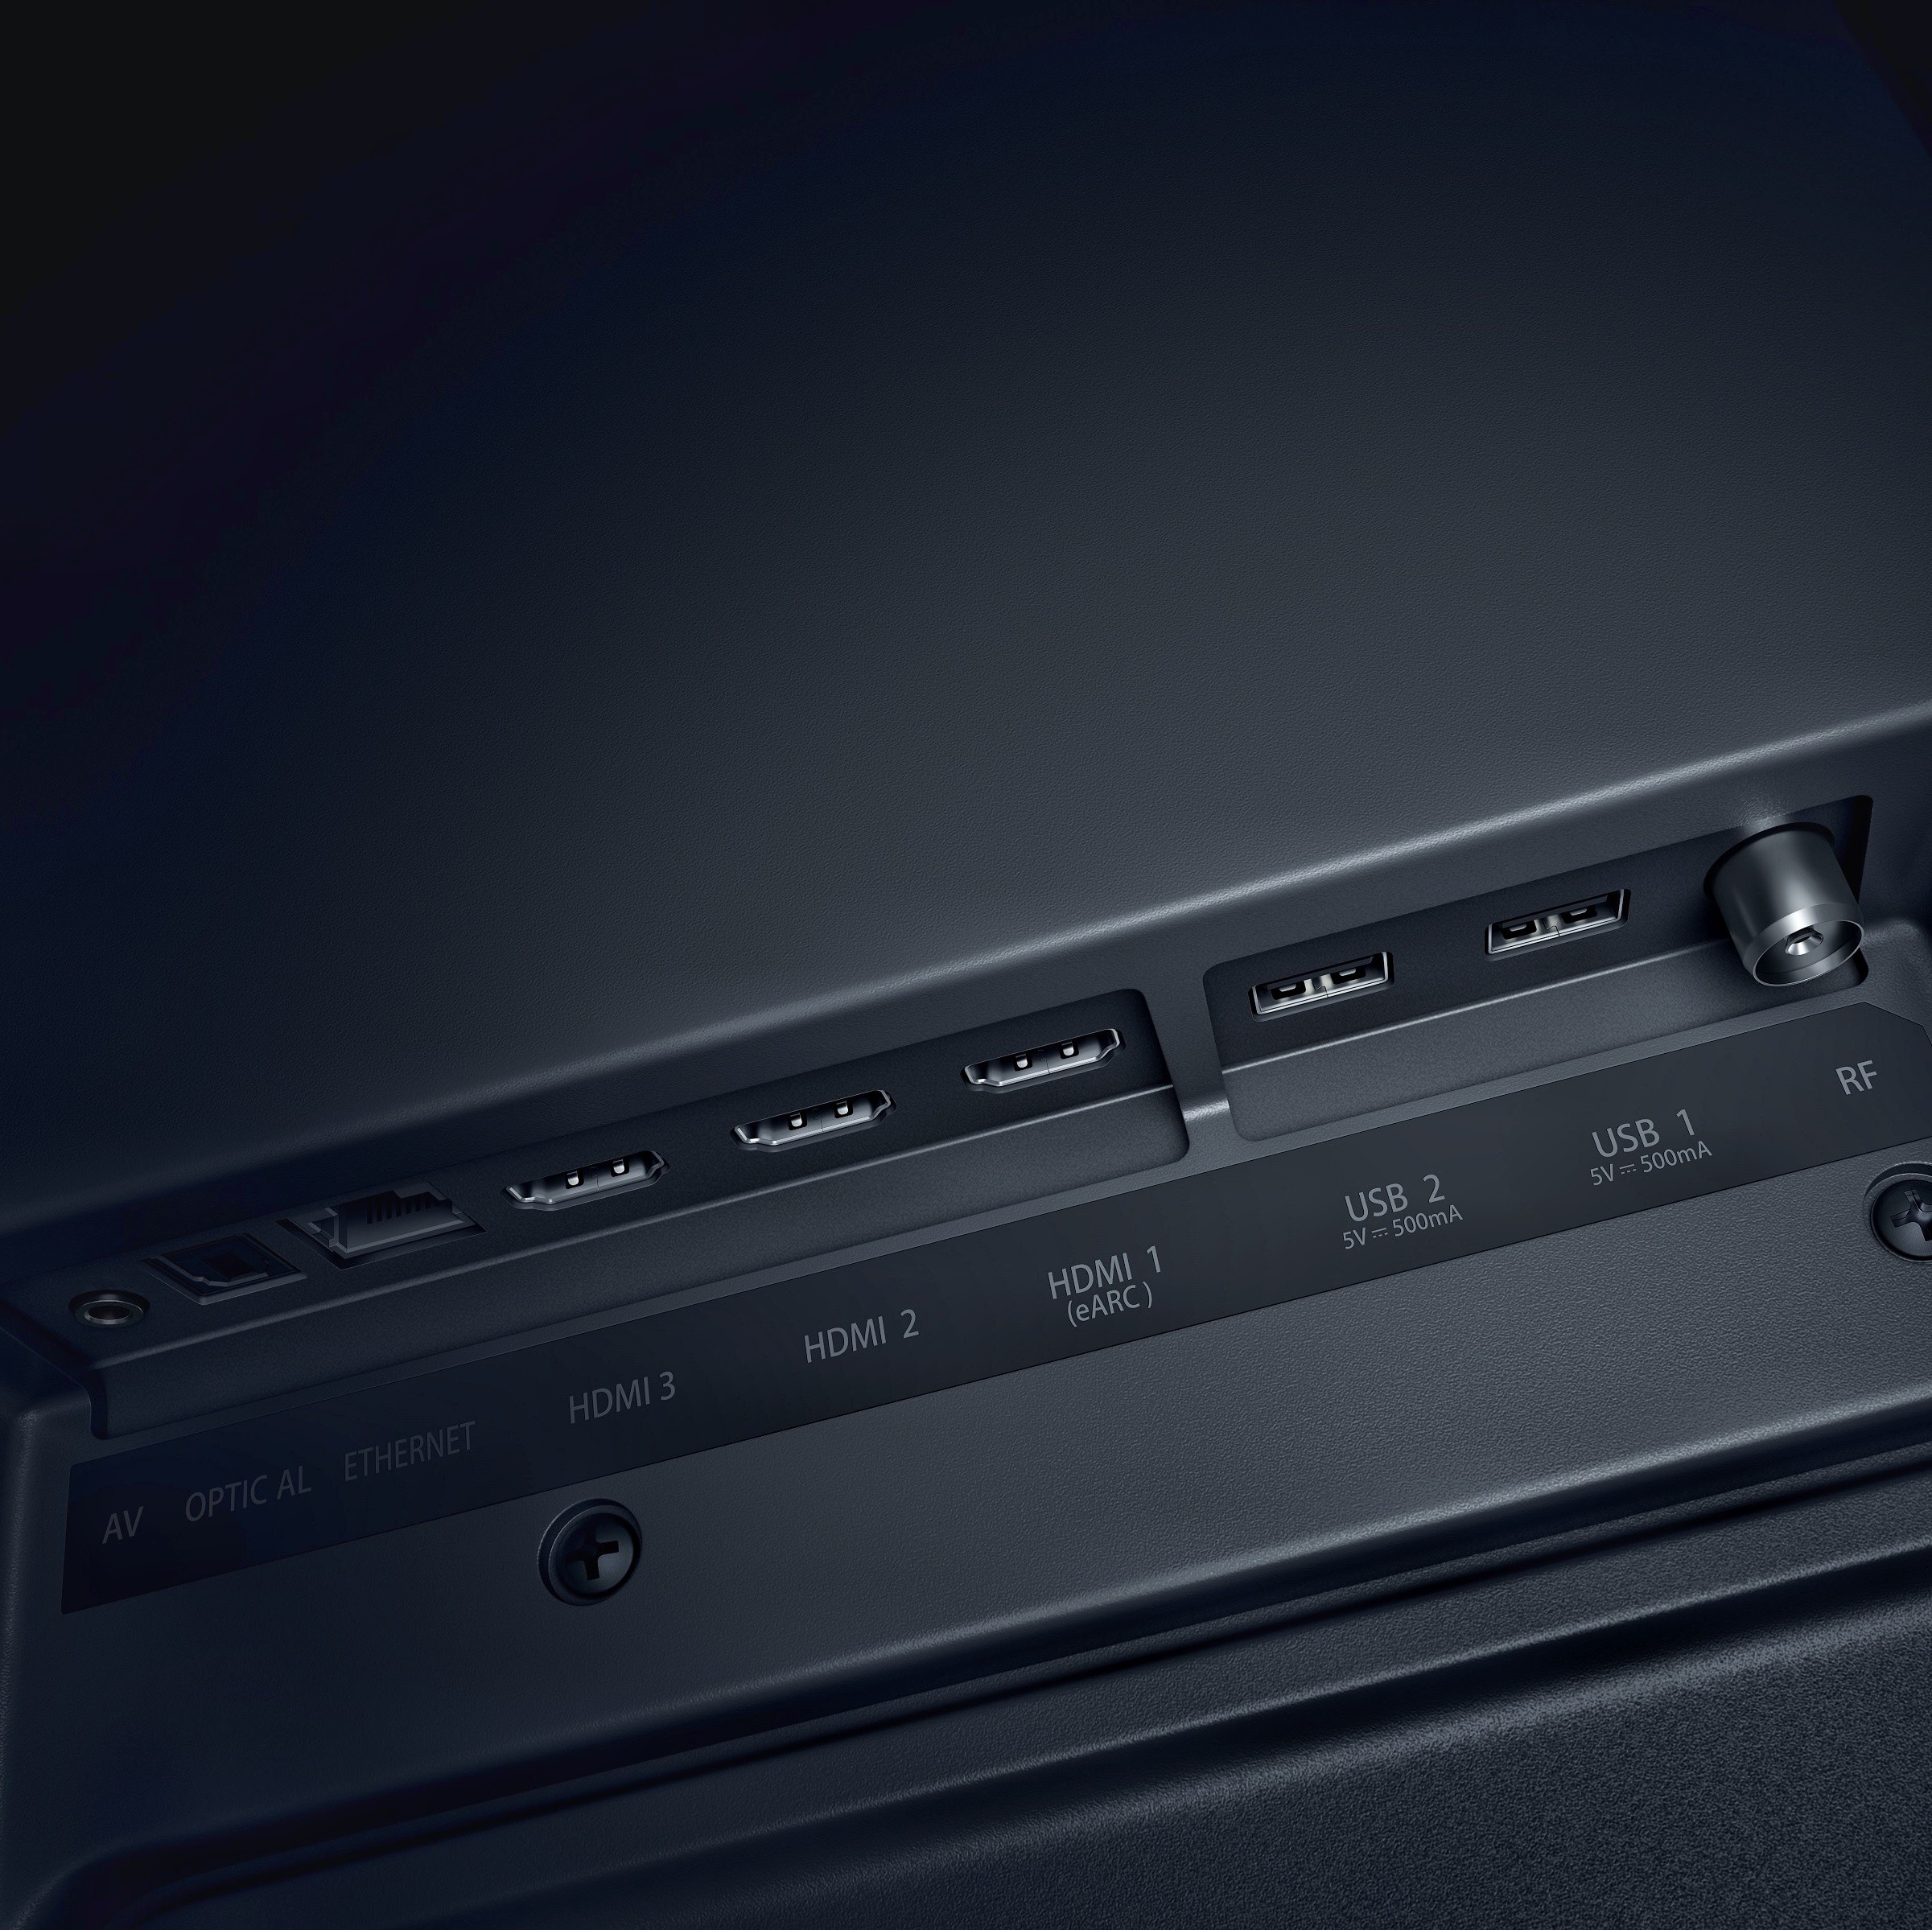 OnePlus  U1S (65 inch) Ultra HD (4K) (65UC1A00)